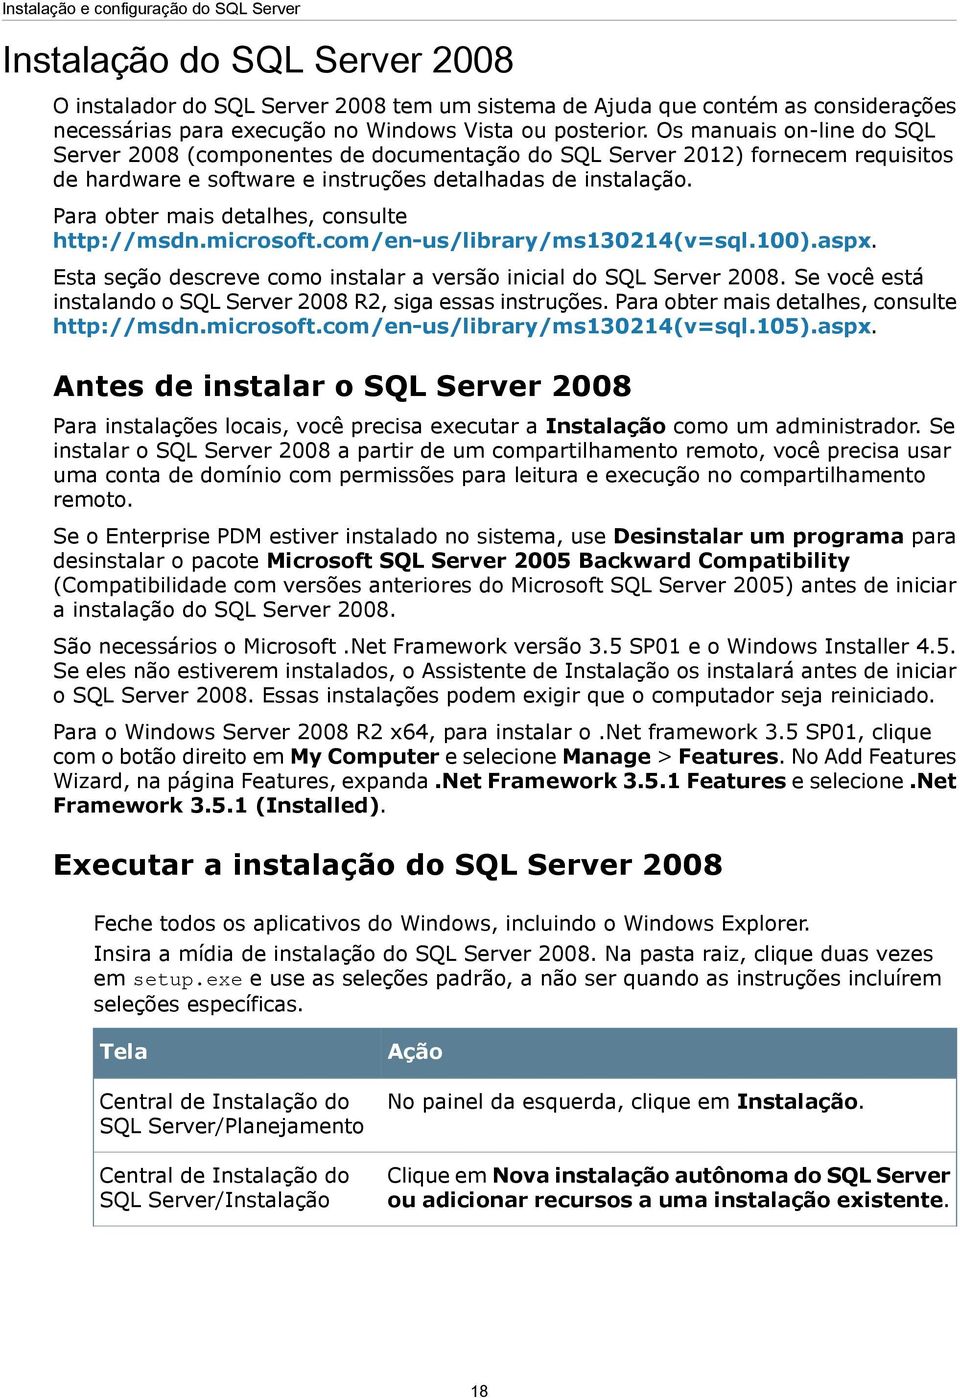 Para obter mais detalhes, consulte http://msdn.microsoft.com/en-us/library/ms130214(v=sql.100).aspx. Esta seção descreve como instalar a versão inicial do SQL Server 2008.